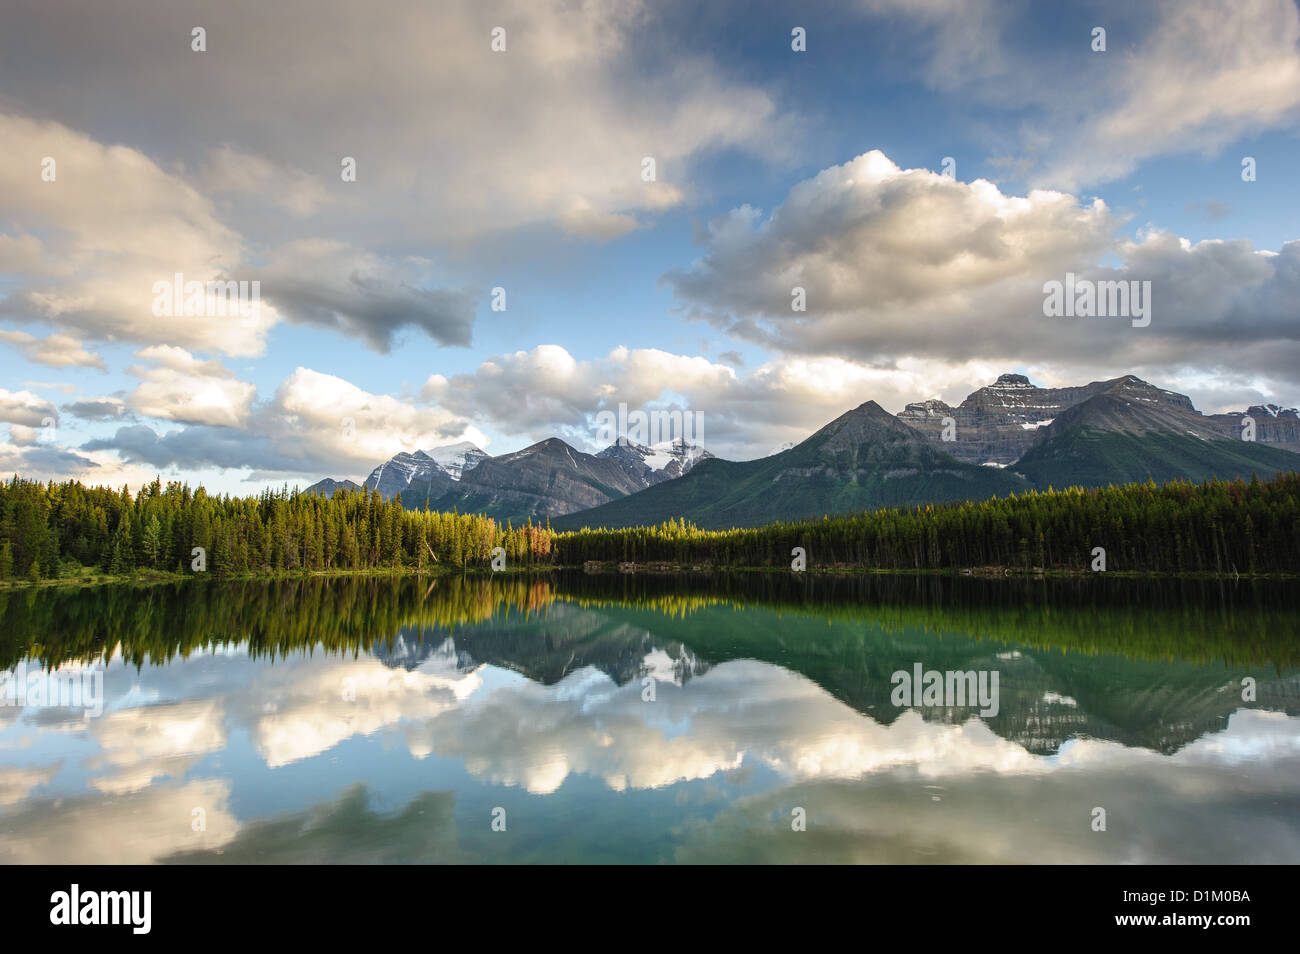 Herbert panorama du lac, dans le parc national Banff, Alberta, Canada Banque D'Images